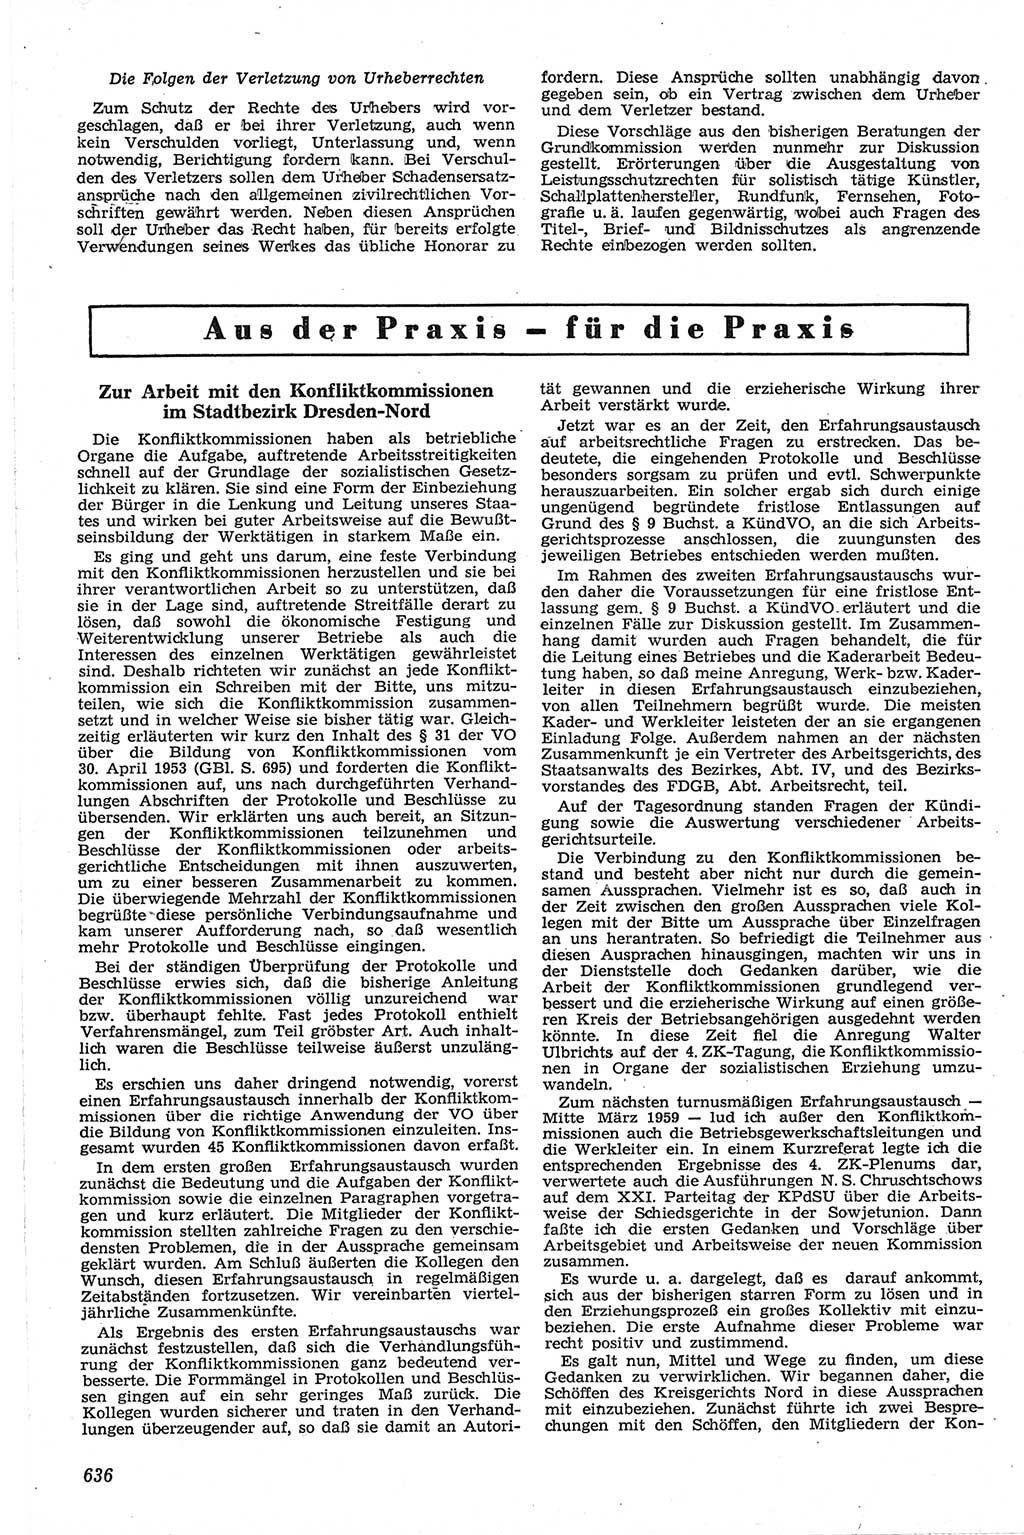 Neue Justiz (NJ), Zeitschrift für Recht und Rechtswissenschaft [Deutsche Demokratische Republik (DDR)], 13. Jahrgang 1959, Seite 636 (NJ DDR 1959, S. 636)